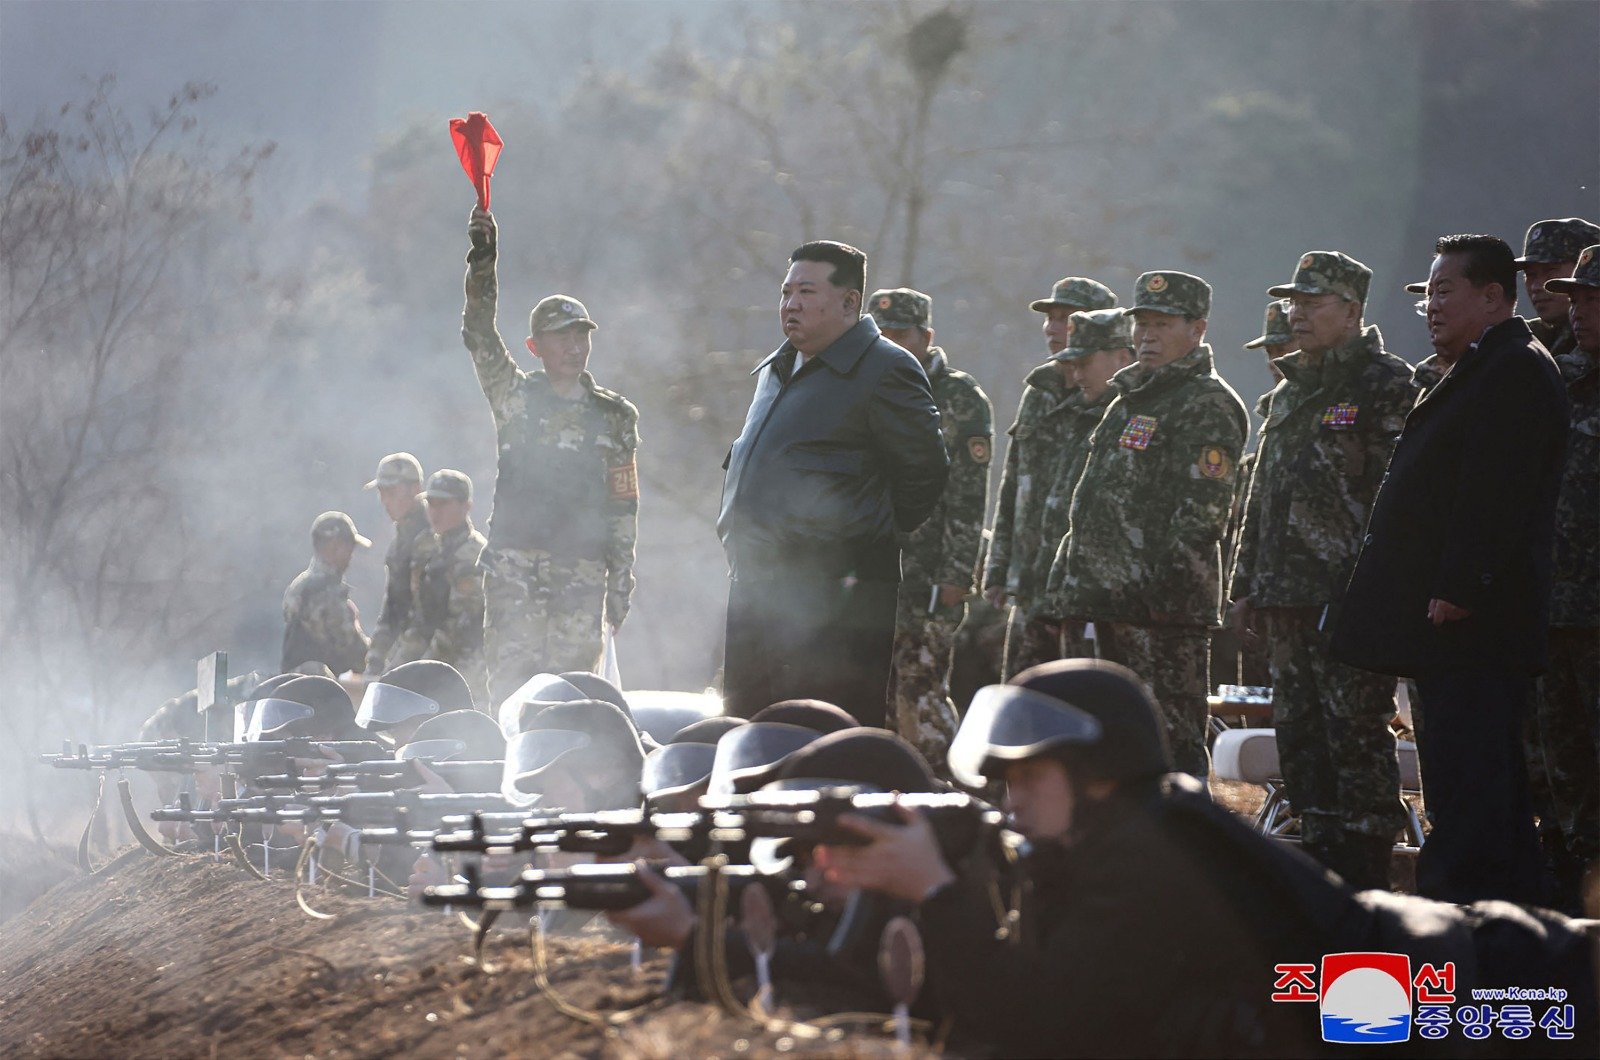 朝鲜最高领导人长金正恩周三前往西北地区的重要作战训练基地，参观设施并指导训练。（图取自朝中社/法新社）